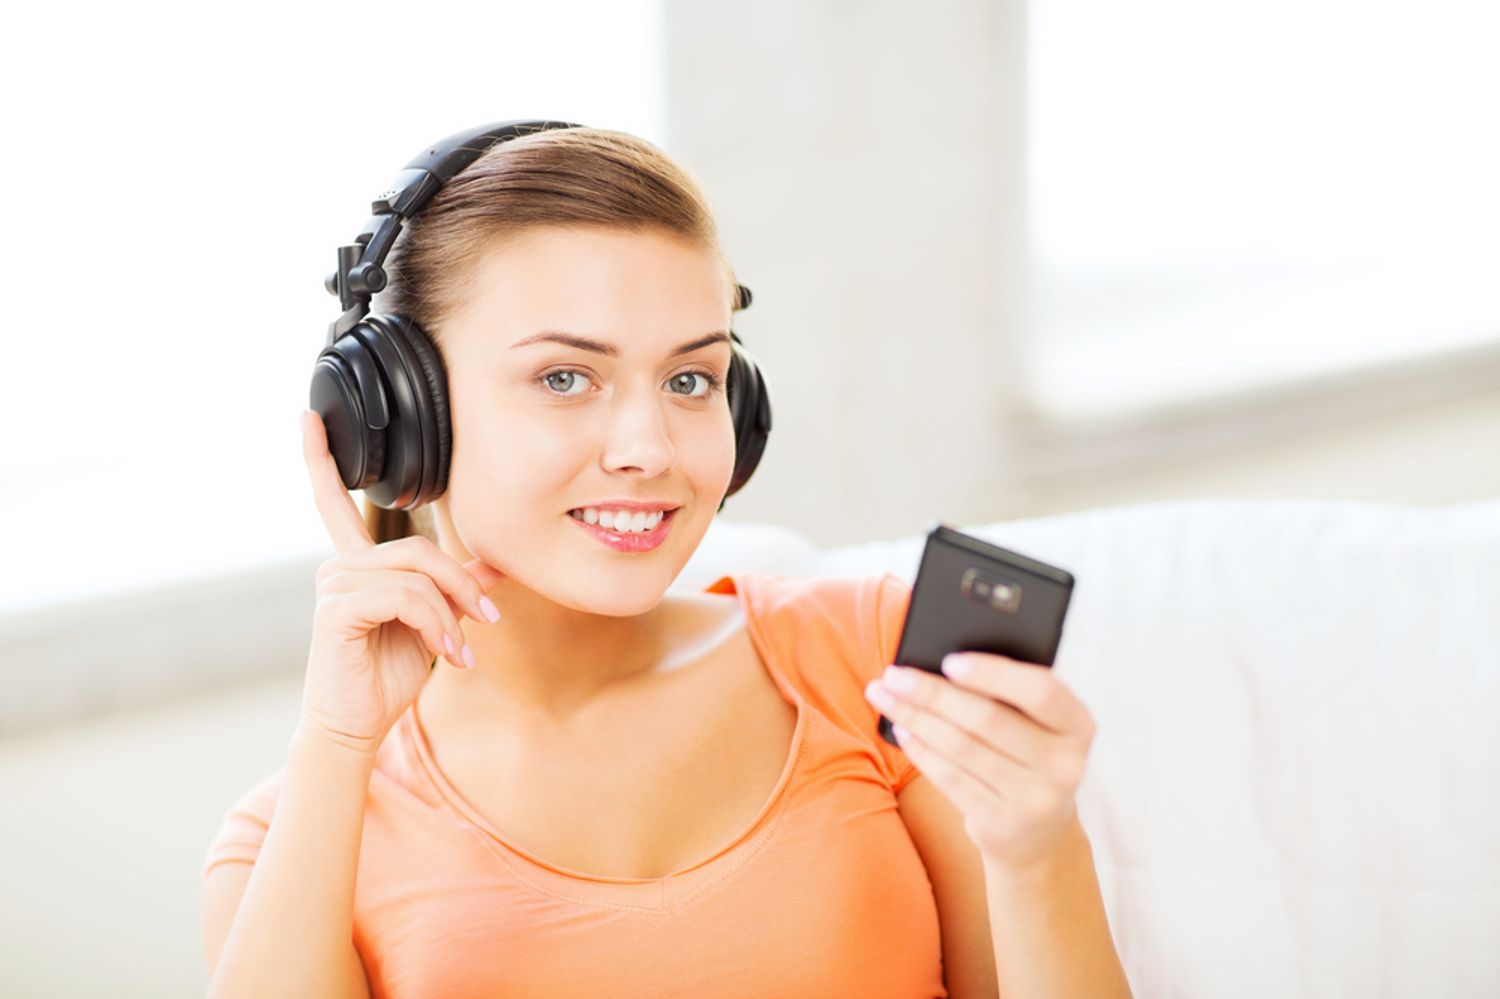 Comparatif des 5 meilleurs lecteurs MP3 running - conseils d'achat 